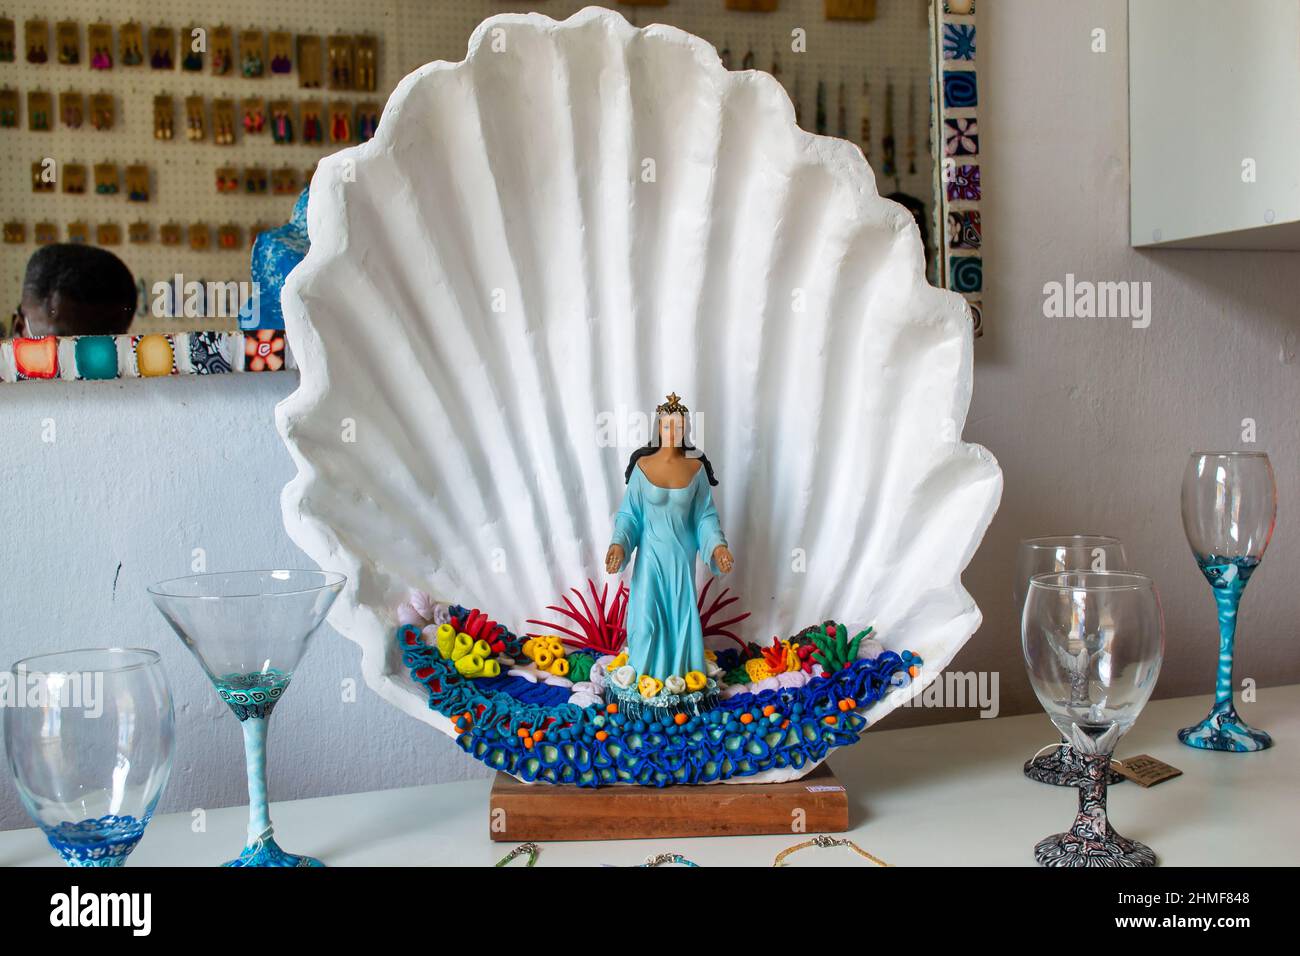 Das religiöse Bild der Meerjungfrau in einer Schale ist in einem Souvenirladen zu sehen Stockfoto